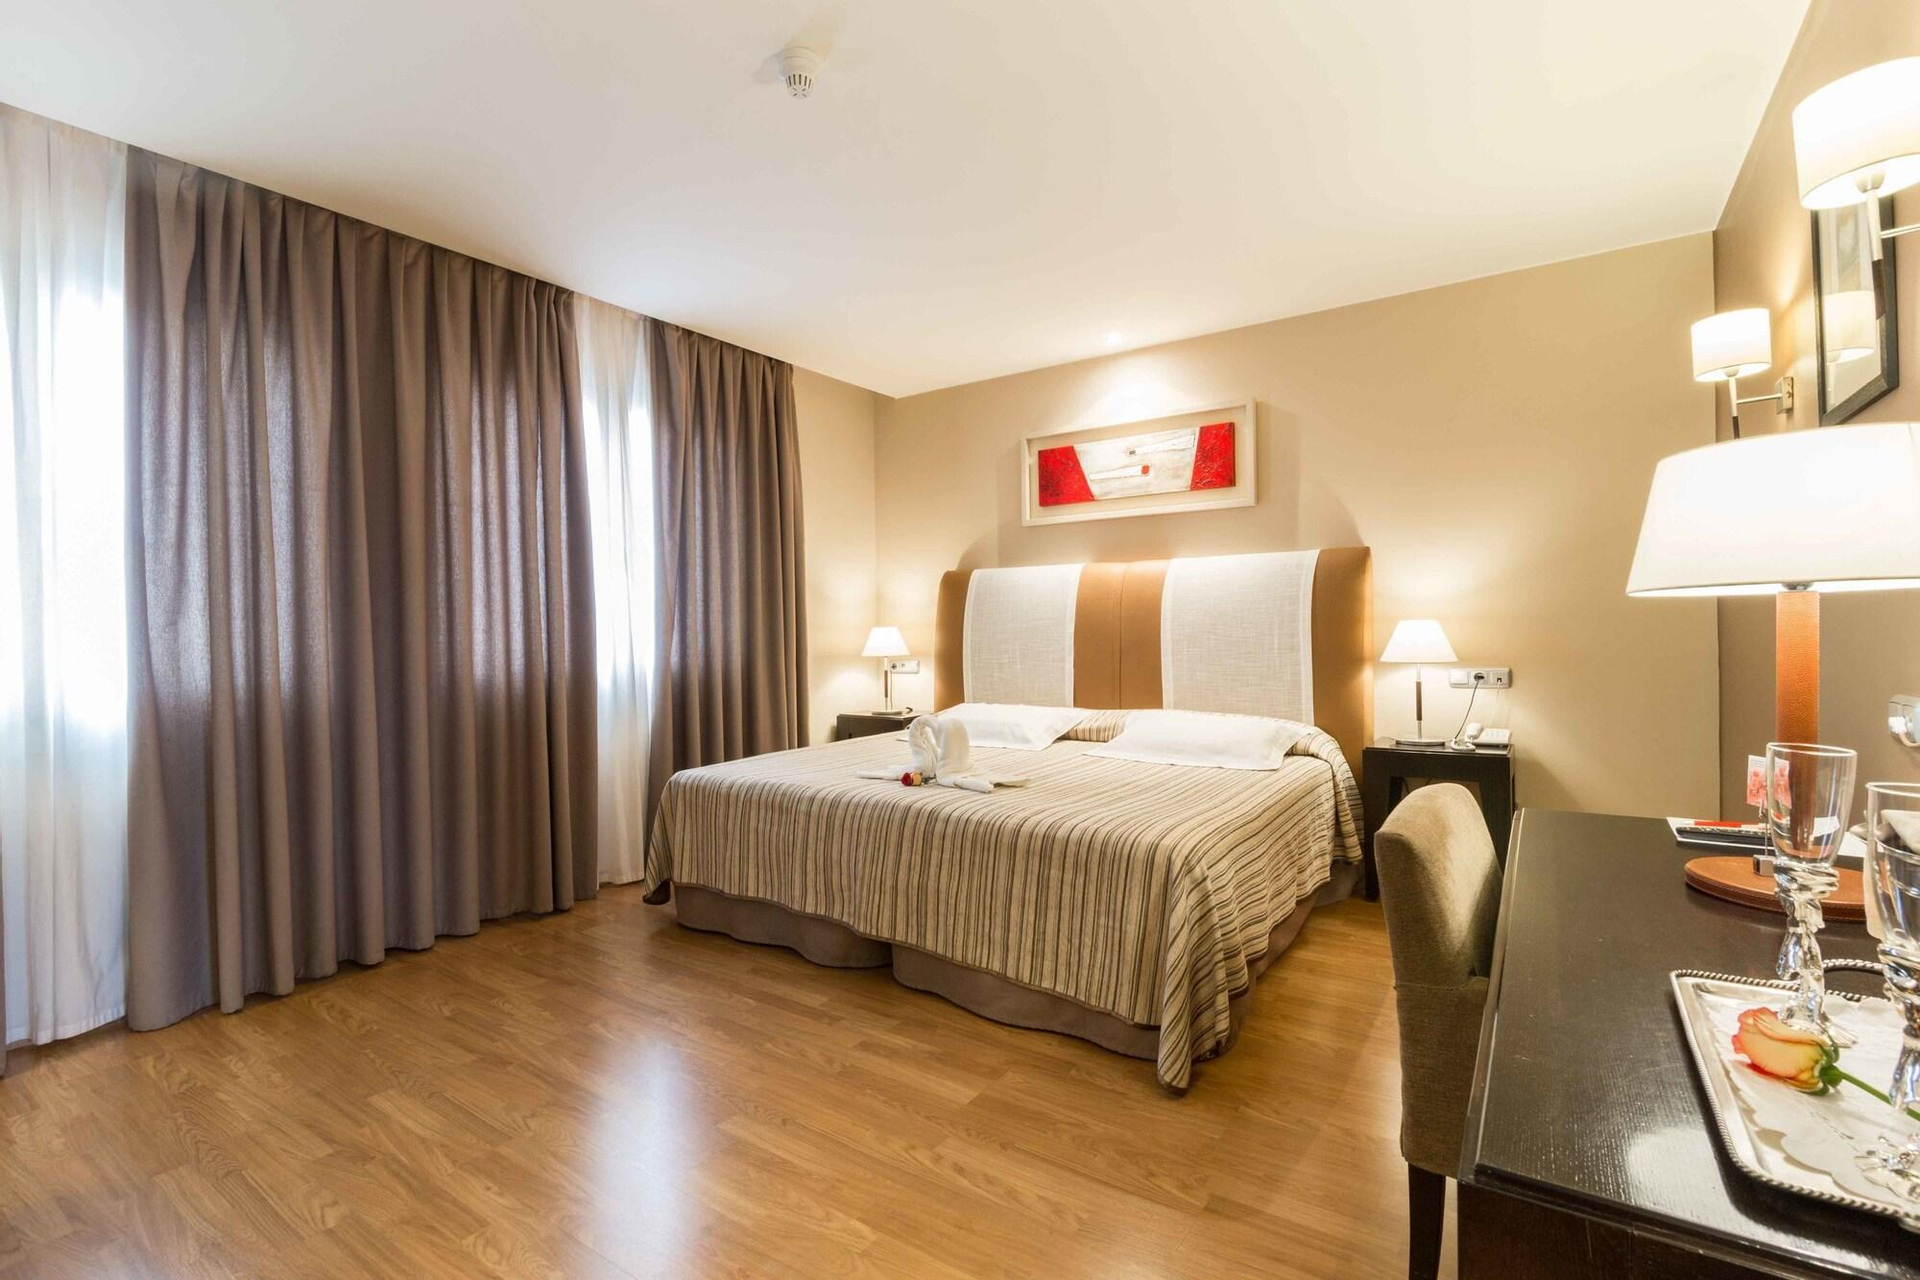 Bedroom, Hotel El Patio, Zaragoza